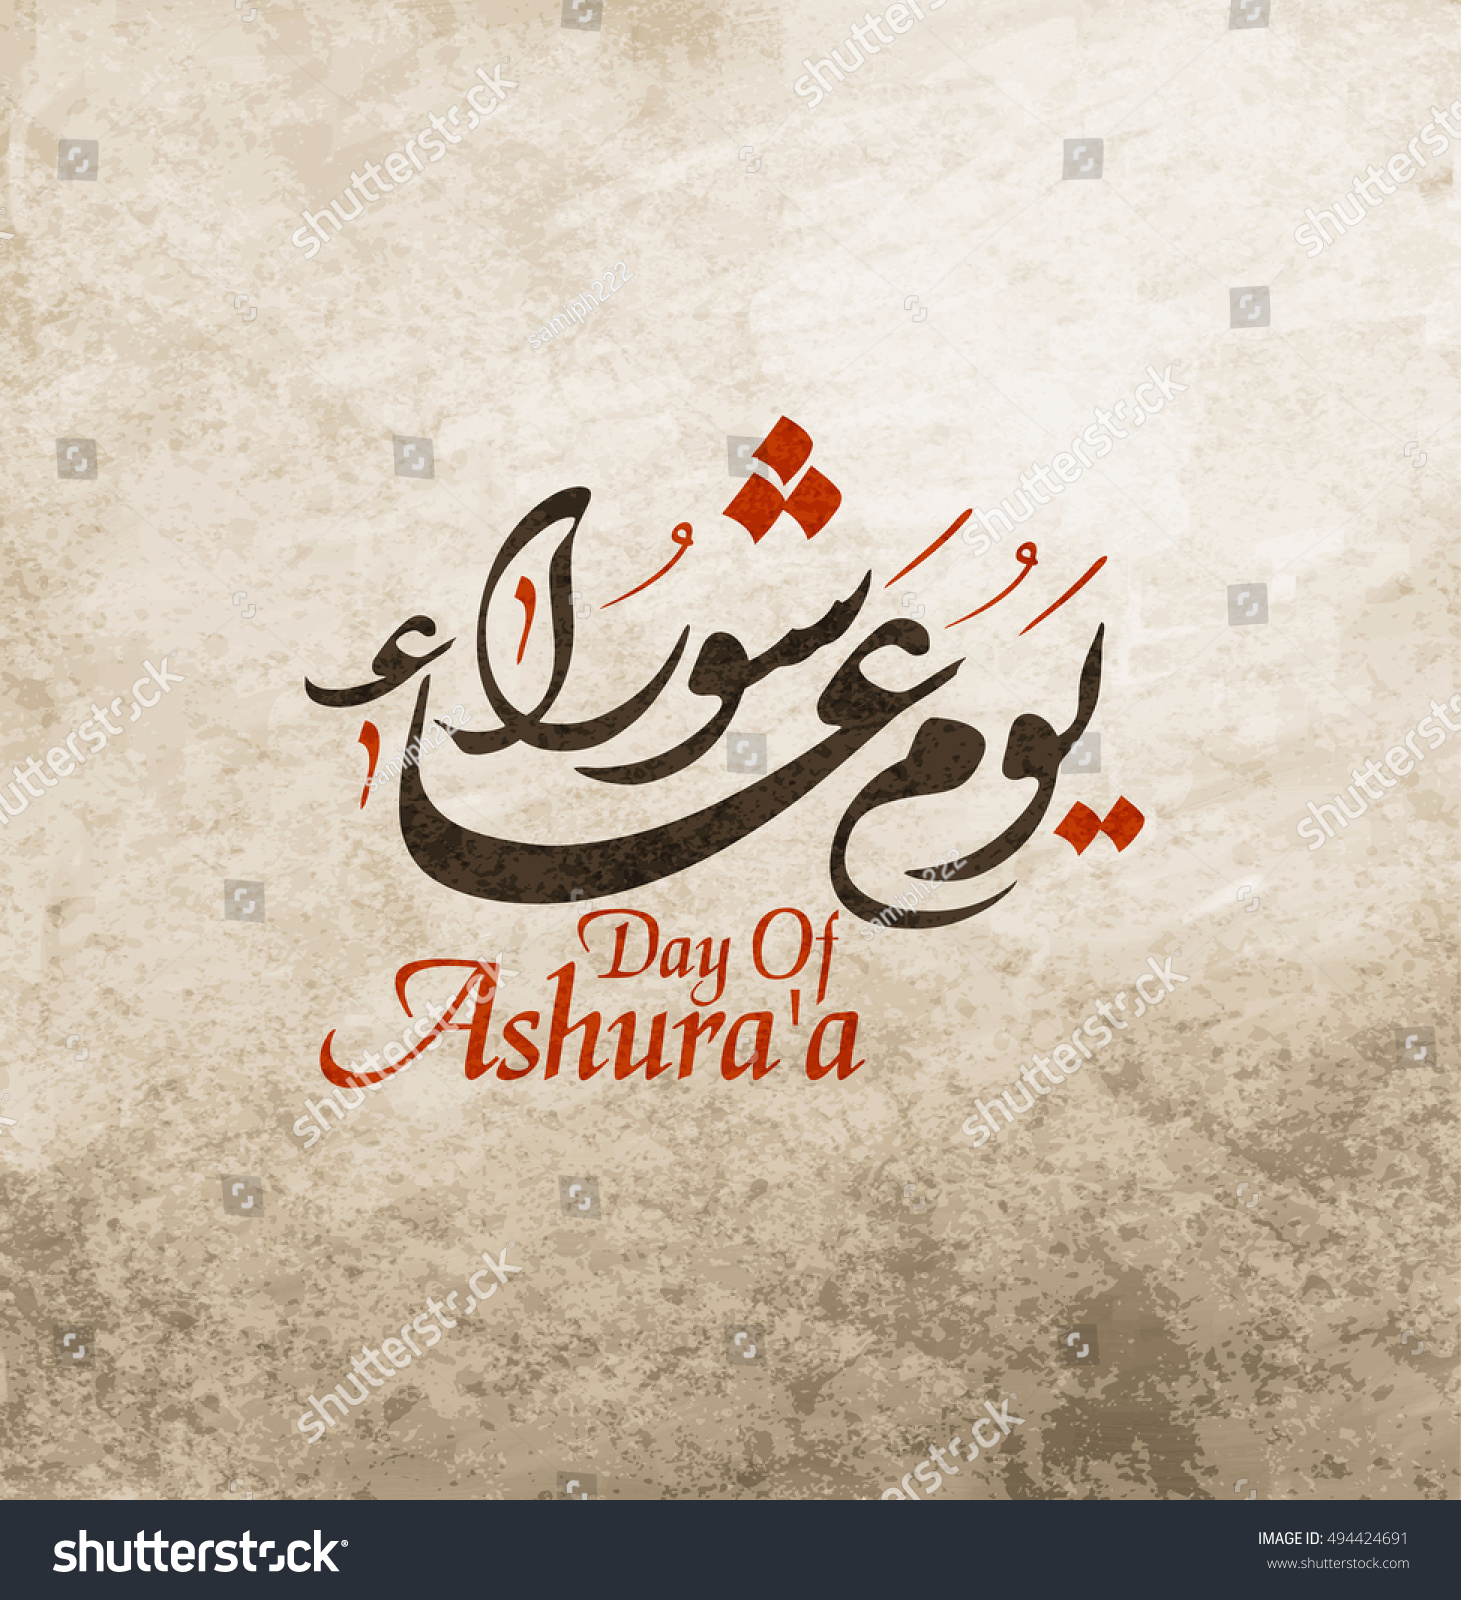 Праздник на арабском языке. С днем рождения на арабском. Поздравление с днем рождения на арабском. Поздравления с днём рождения на арабском языке. День Ашура поздравление.